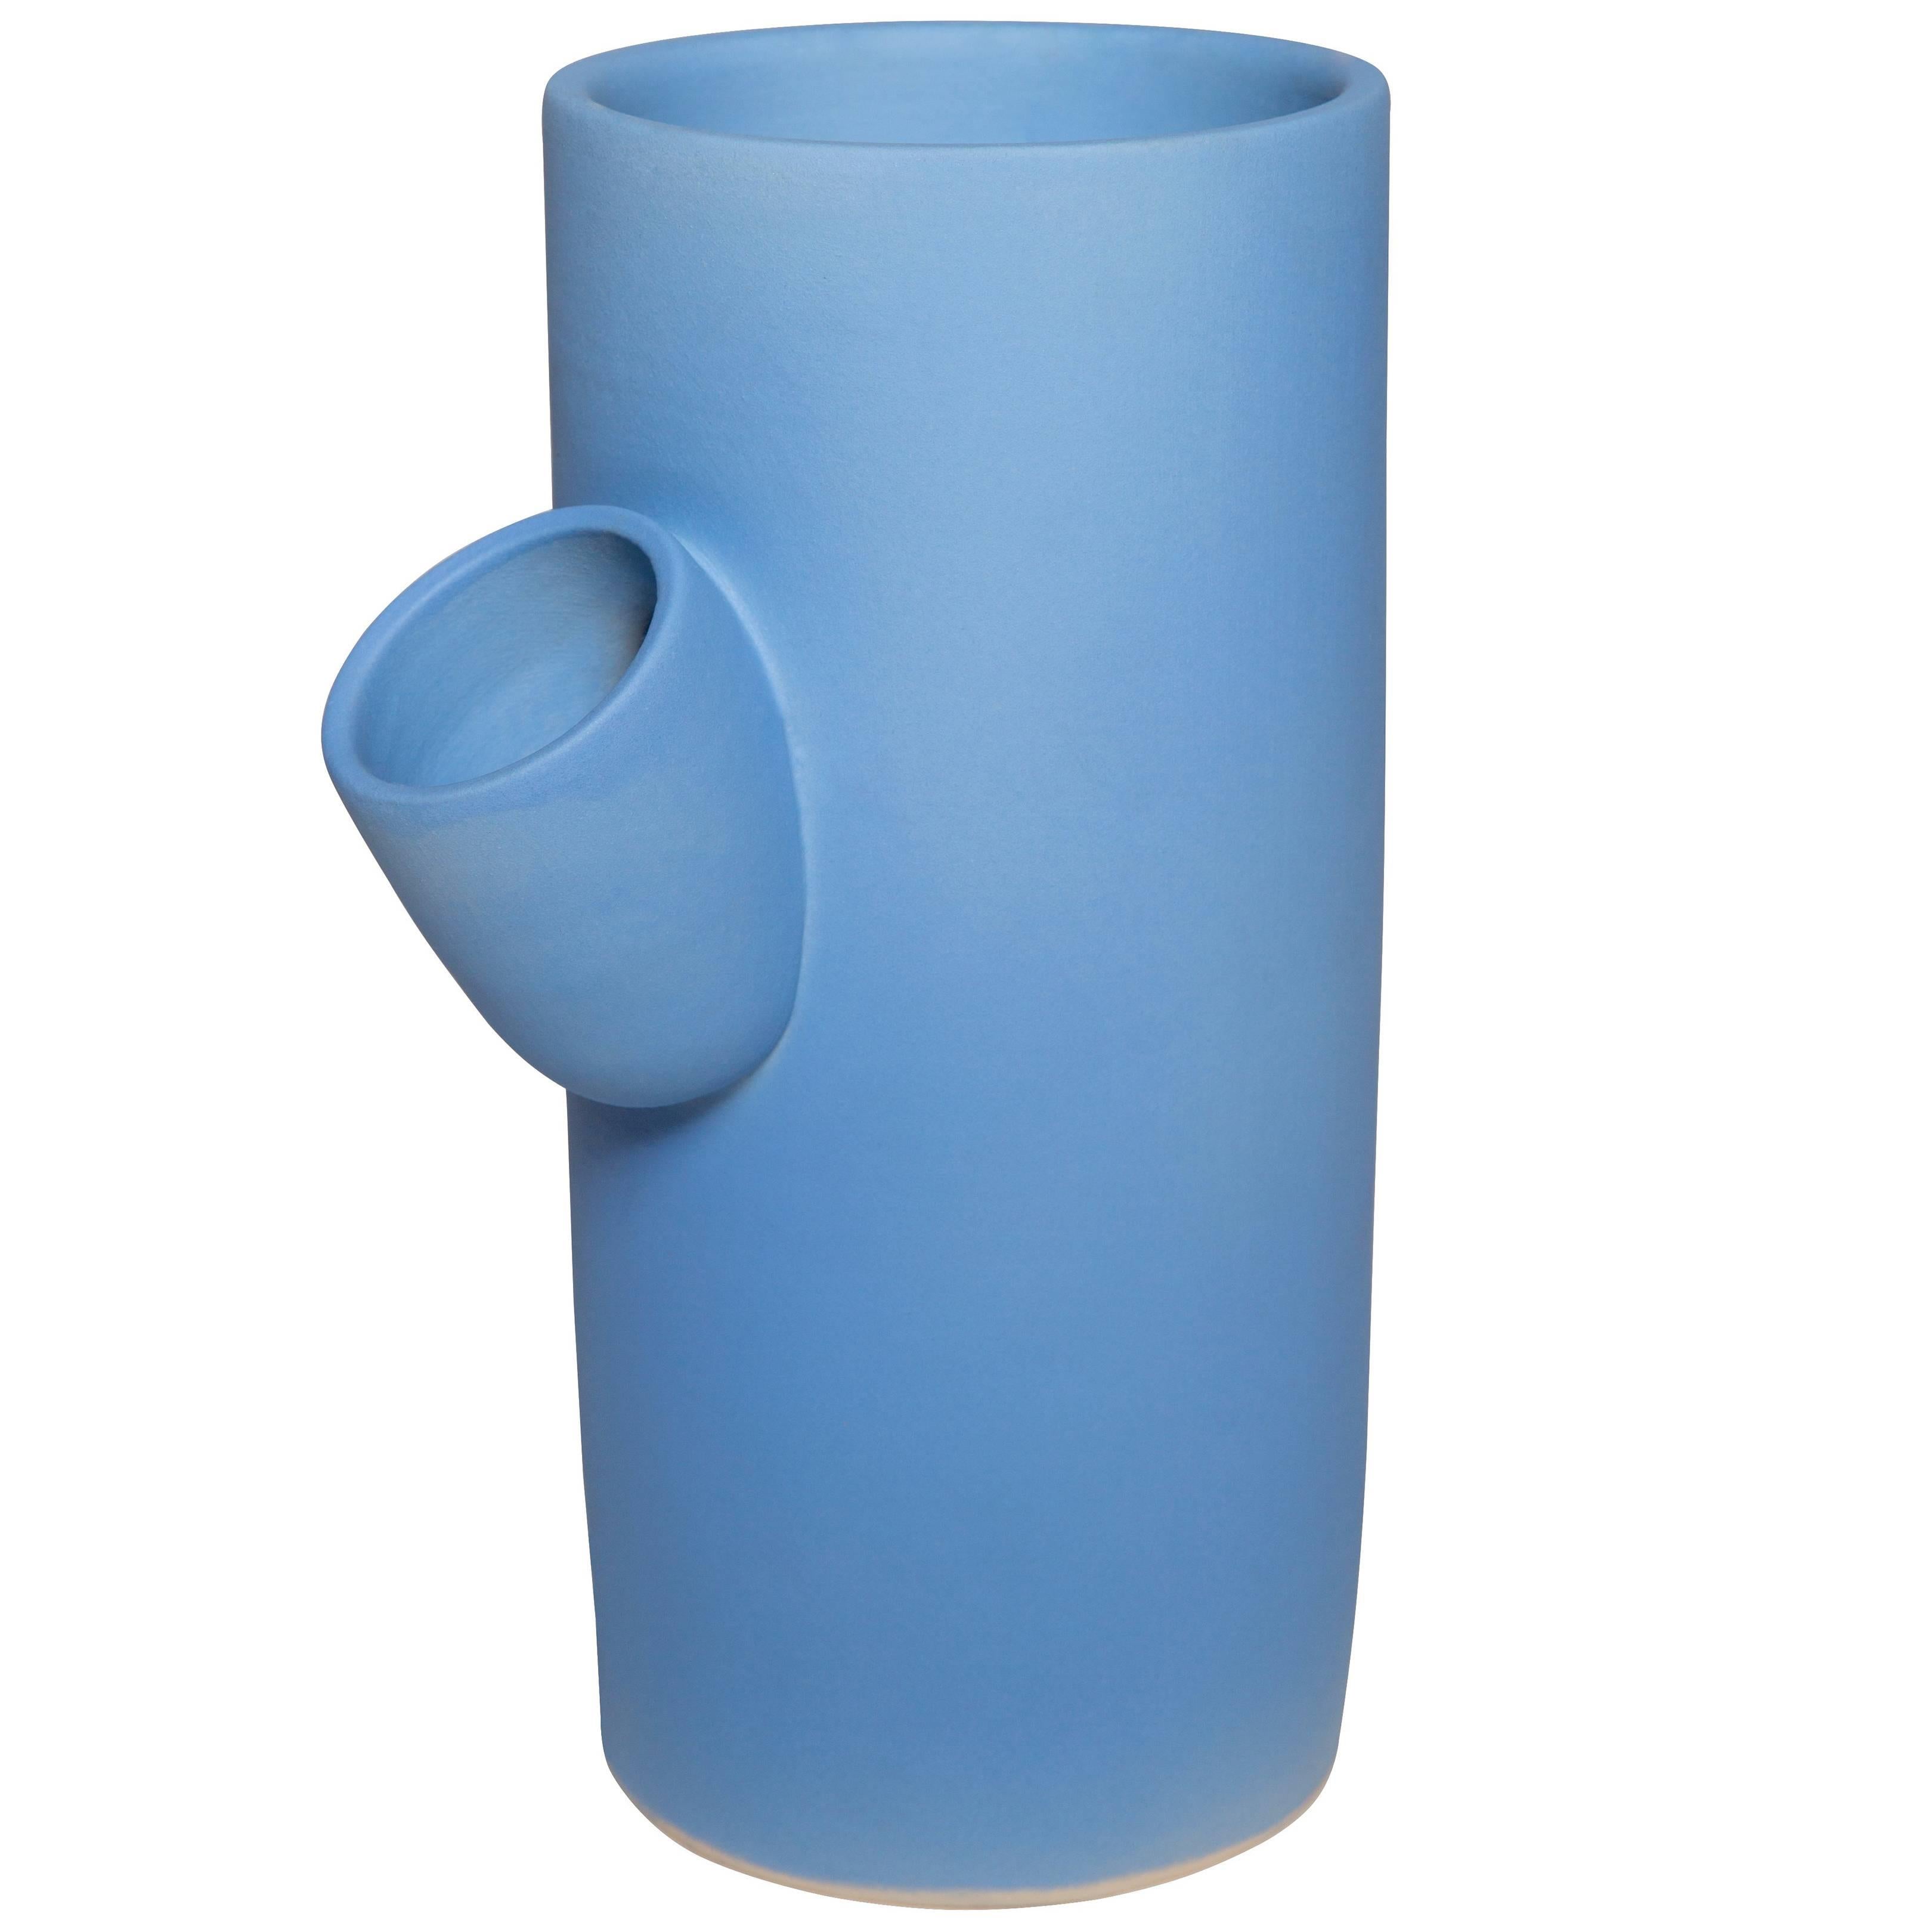  Hydrangea, handgefertigte Vase aus Keramik von Pieces, moderner anpassbarer blauer Krug